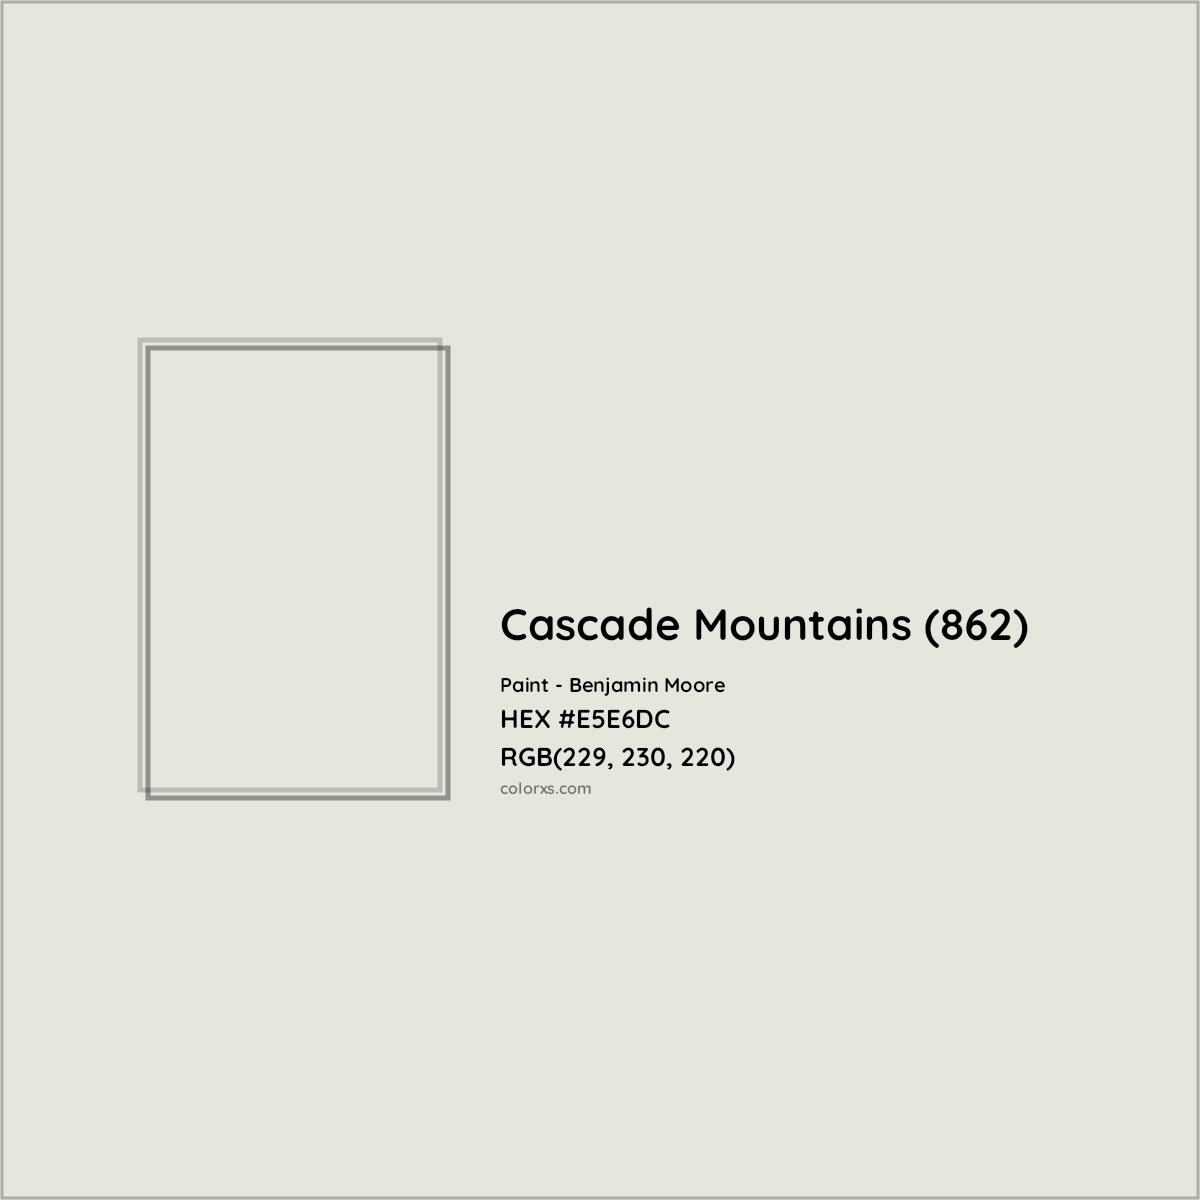 HEX #E5E6DC Cascade Mountains (862) Paint Benjamin Moore - Color Code